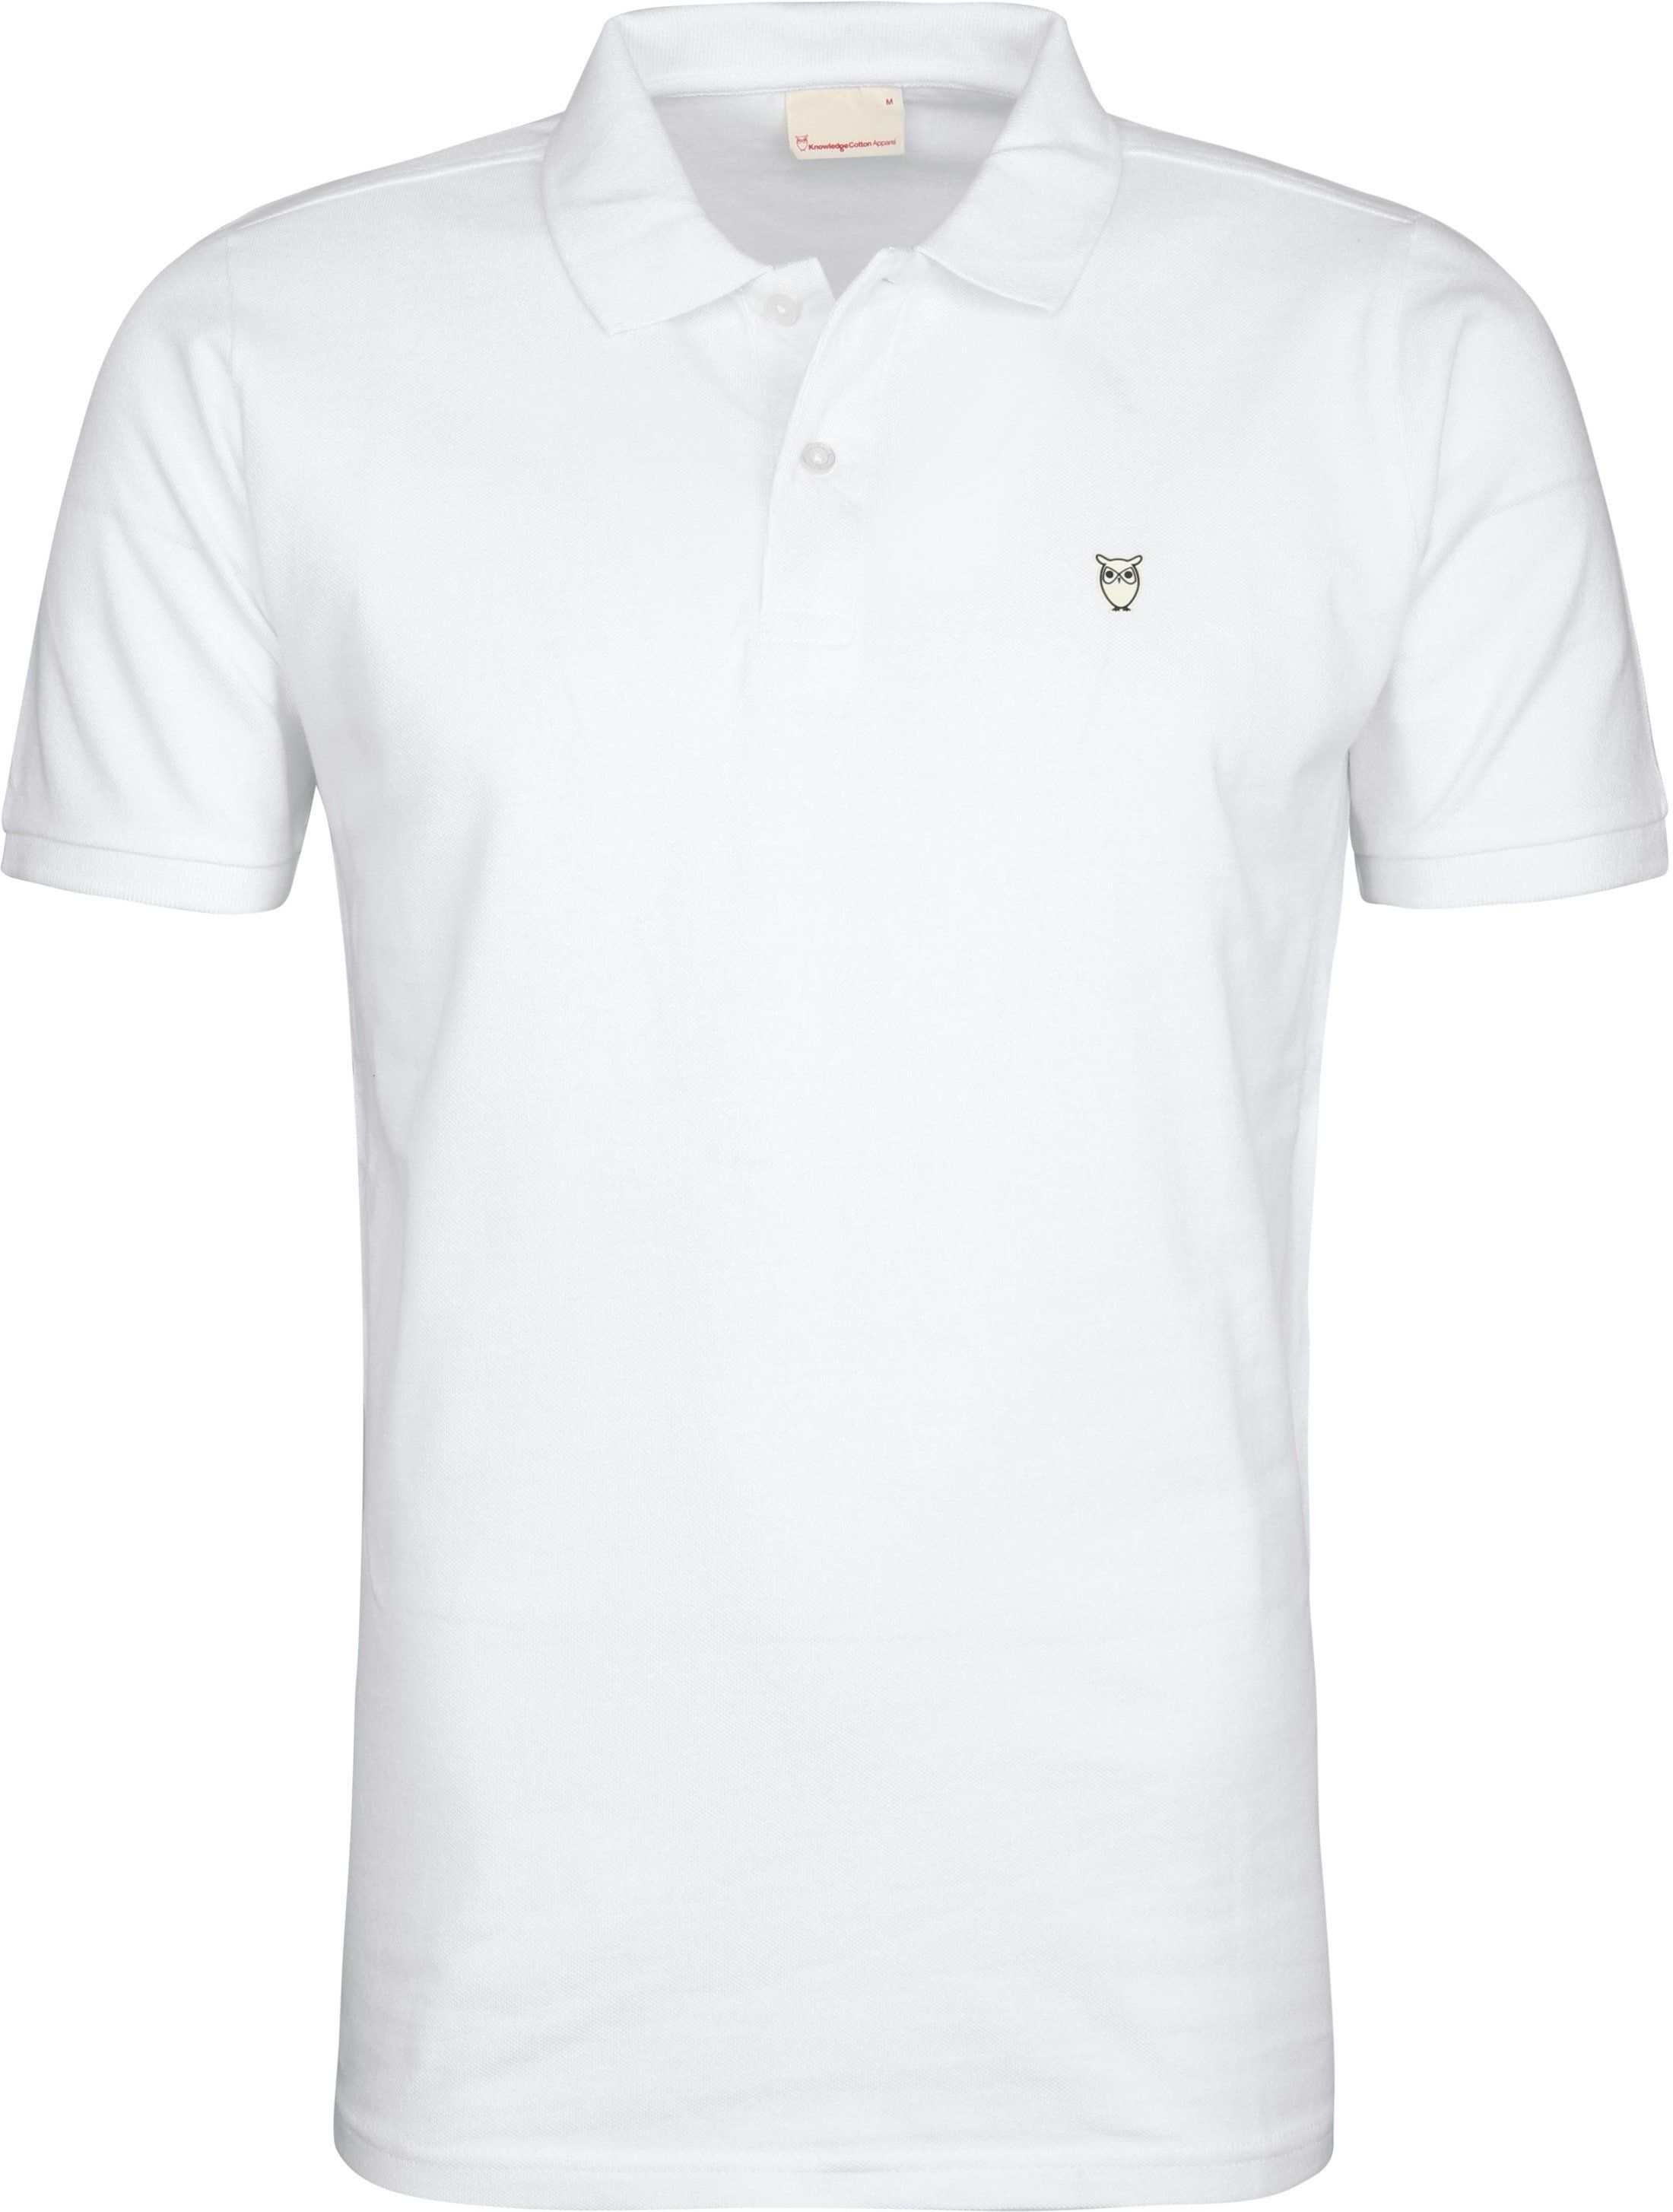 KnowledgeCotton Apparel Poloshirt White size XL